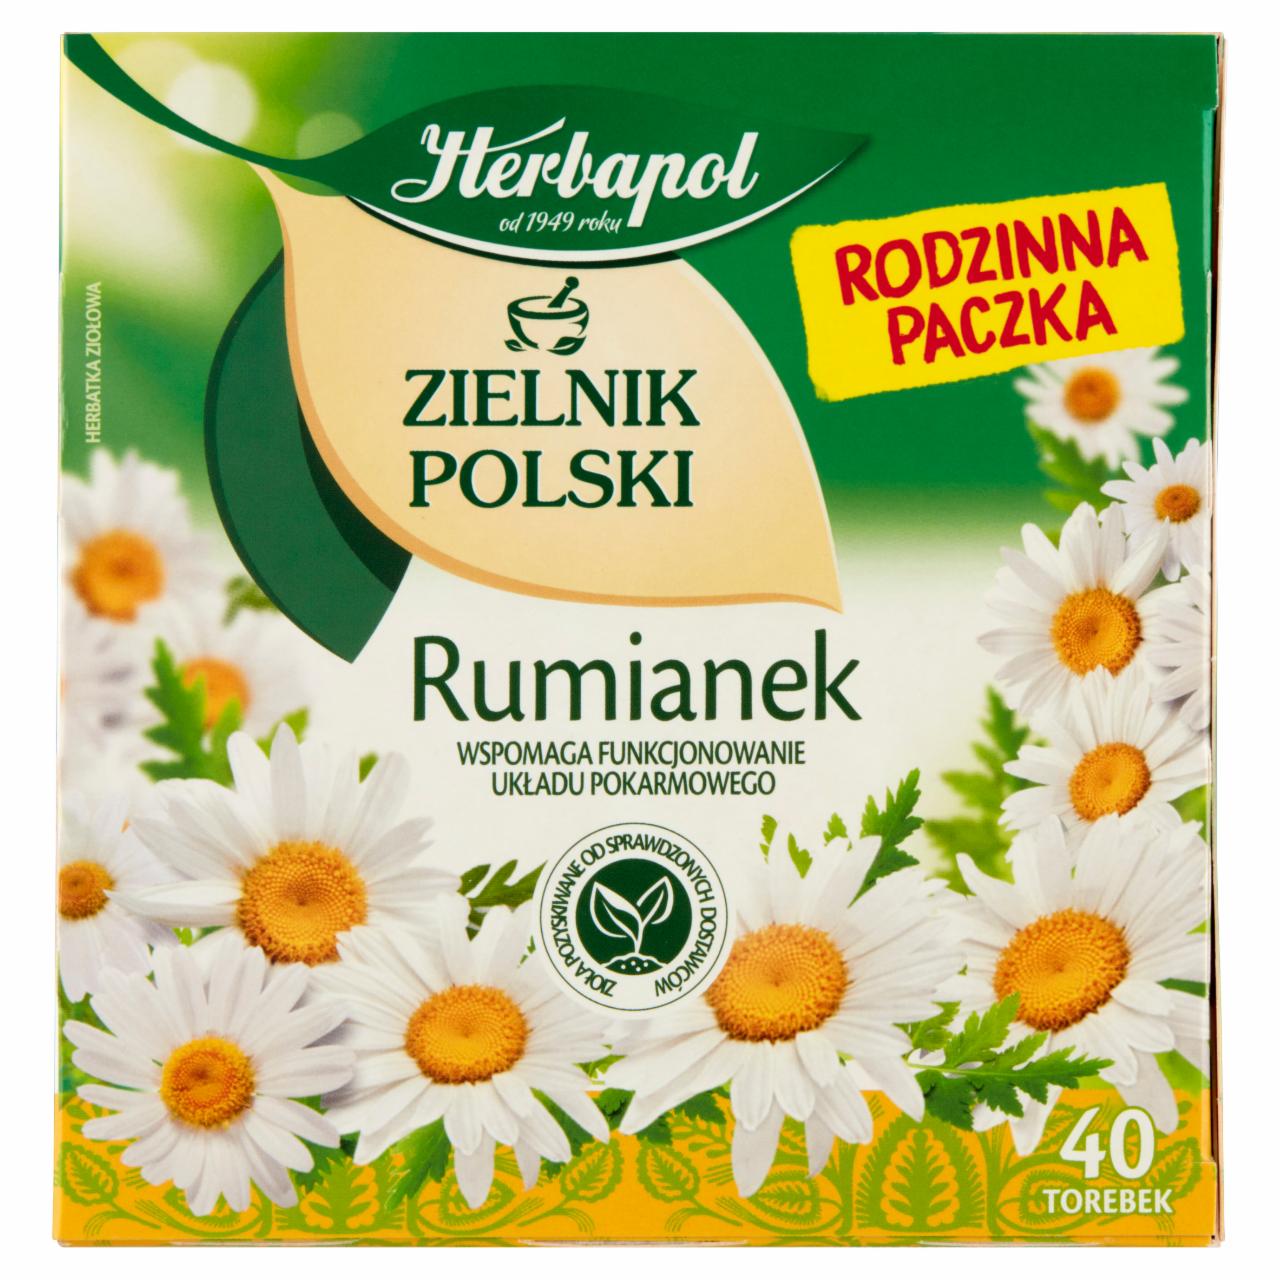 Zdjęcia - Herbapol Zielnik Polski Herbatka ziołowa rumianek 30 g (20 x 1,5 g)